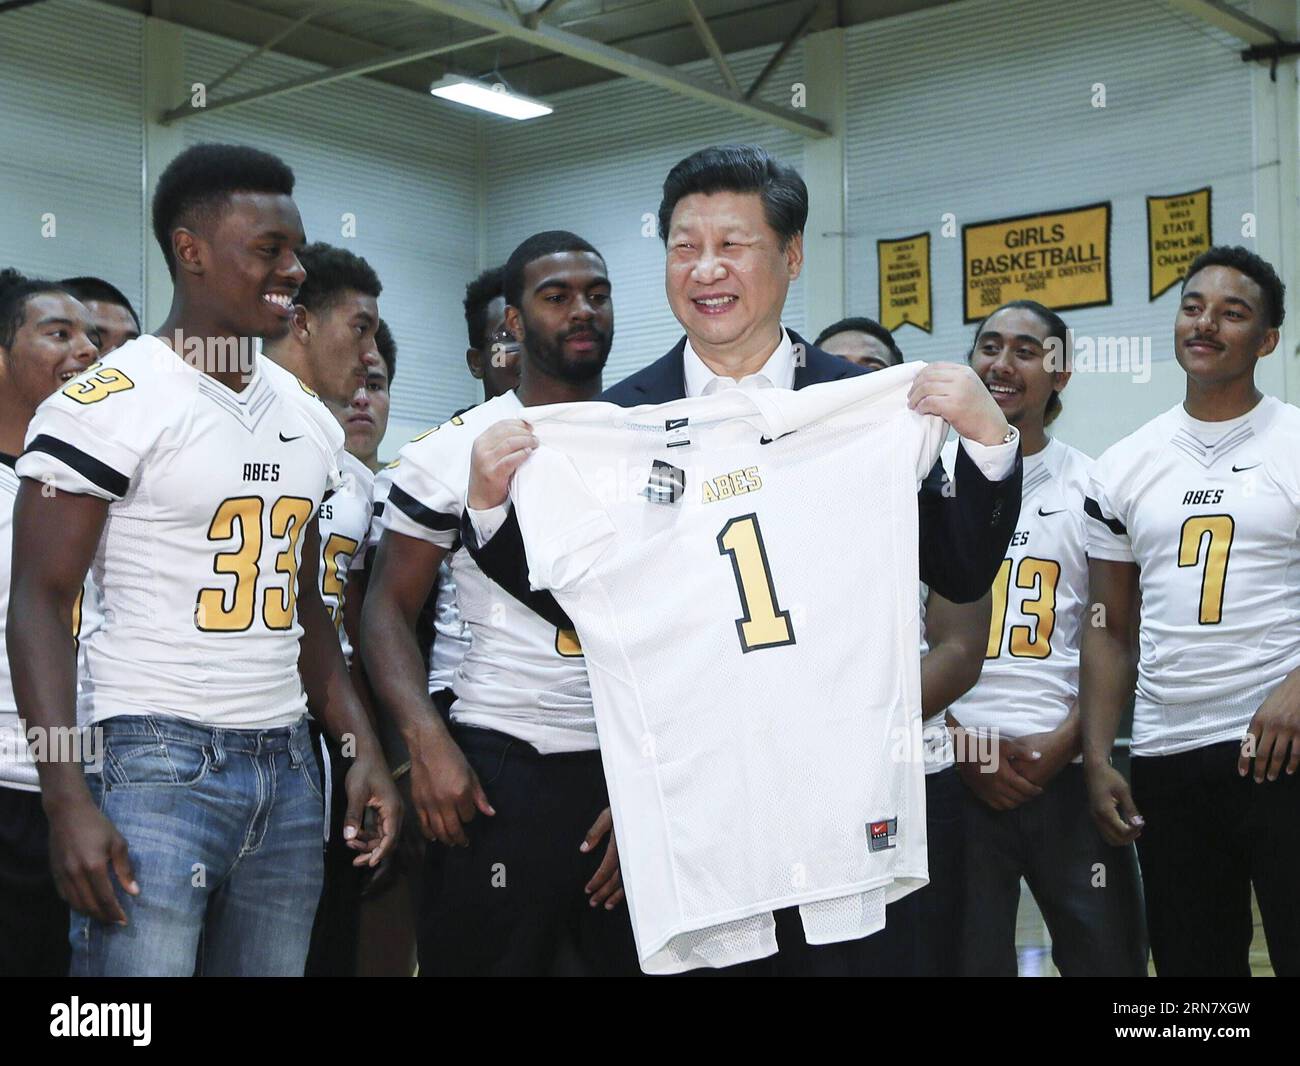 (150923) -- SEATTLE, 23. September 2015 -- der chinesische Präsident Xi Jinping (C) wird während seines Besuchs an der Lincoln High School in Tacoma of Washington State, USA, am 23. September 2015 von Schülern mit einem Rugbyhemd präsentiert. ) (wf) U.S.-SEATTLE-CHINA-XI JINPING-SCHOOL-VISIT LanxHongguang PUBLICATIONxNOTxINxCHN Seattle 23. September 2015 der chinesische Präsident Xi Jinping C WIRD während seines Besuchs an der Lincoln High School in Tacoma von Washington State dem Besuch der US-amerikanischen WF U S Seattle China Xi Jinping School am 23. September 2015 von Schülern mit einem Rugby-Shirt präsentiert LanxHongguang PUBLICATIONxNOTxINxCHN Stockfoto